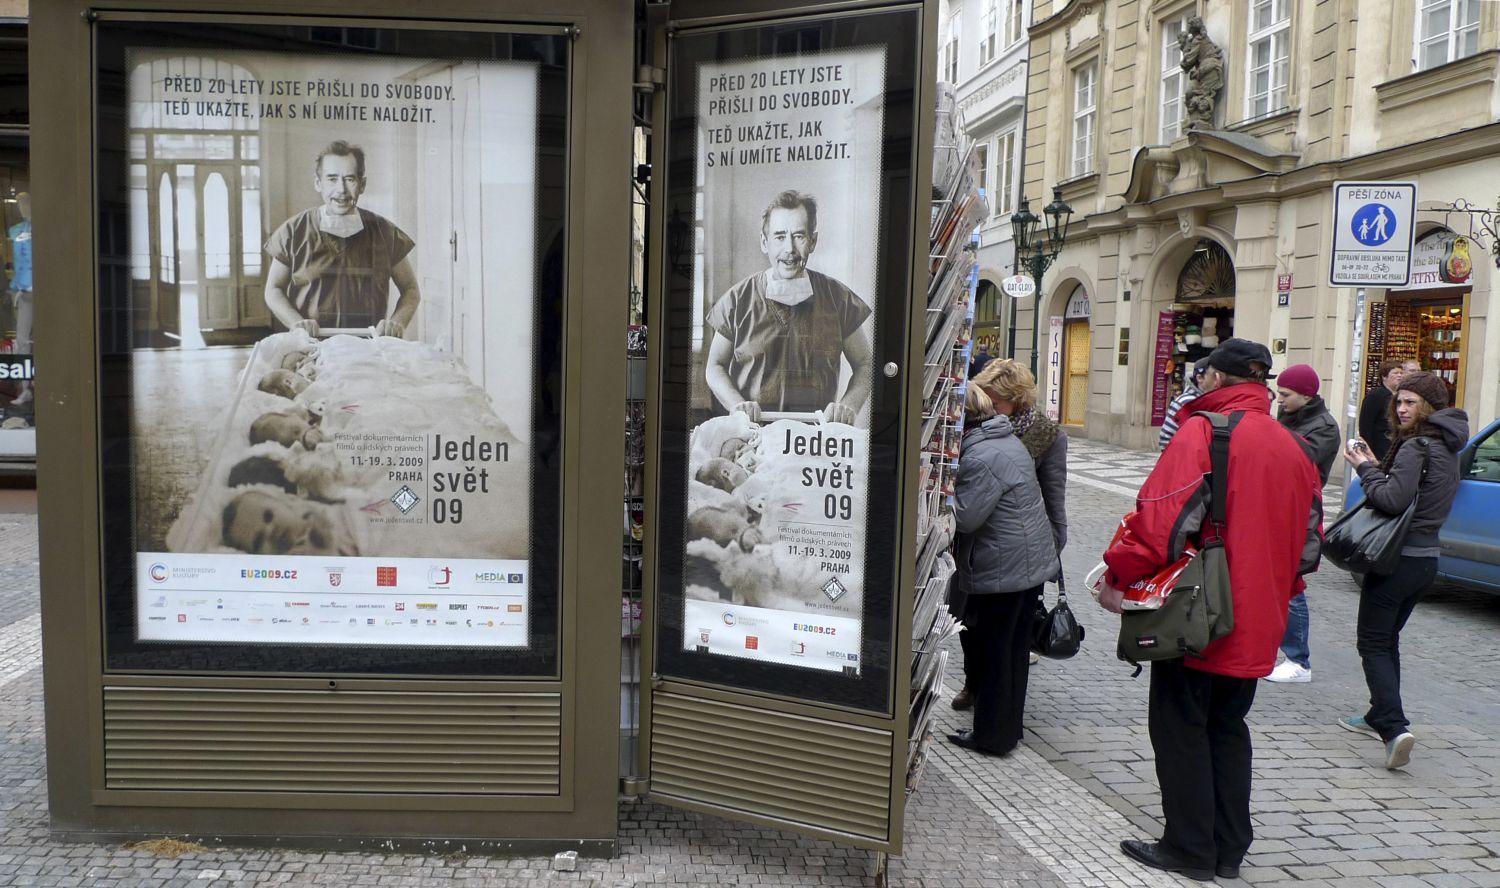 Prágai újságosstand 2009-ben egy poszterrel, amelyen a néhai elnök, Vacláv Havel egy emberi jogi dokummentumfilm-fesztivált reklámozott. Befuccsolt a százéves modell